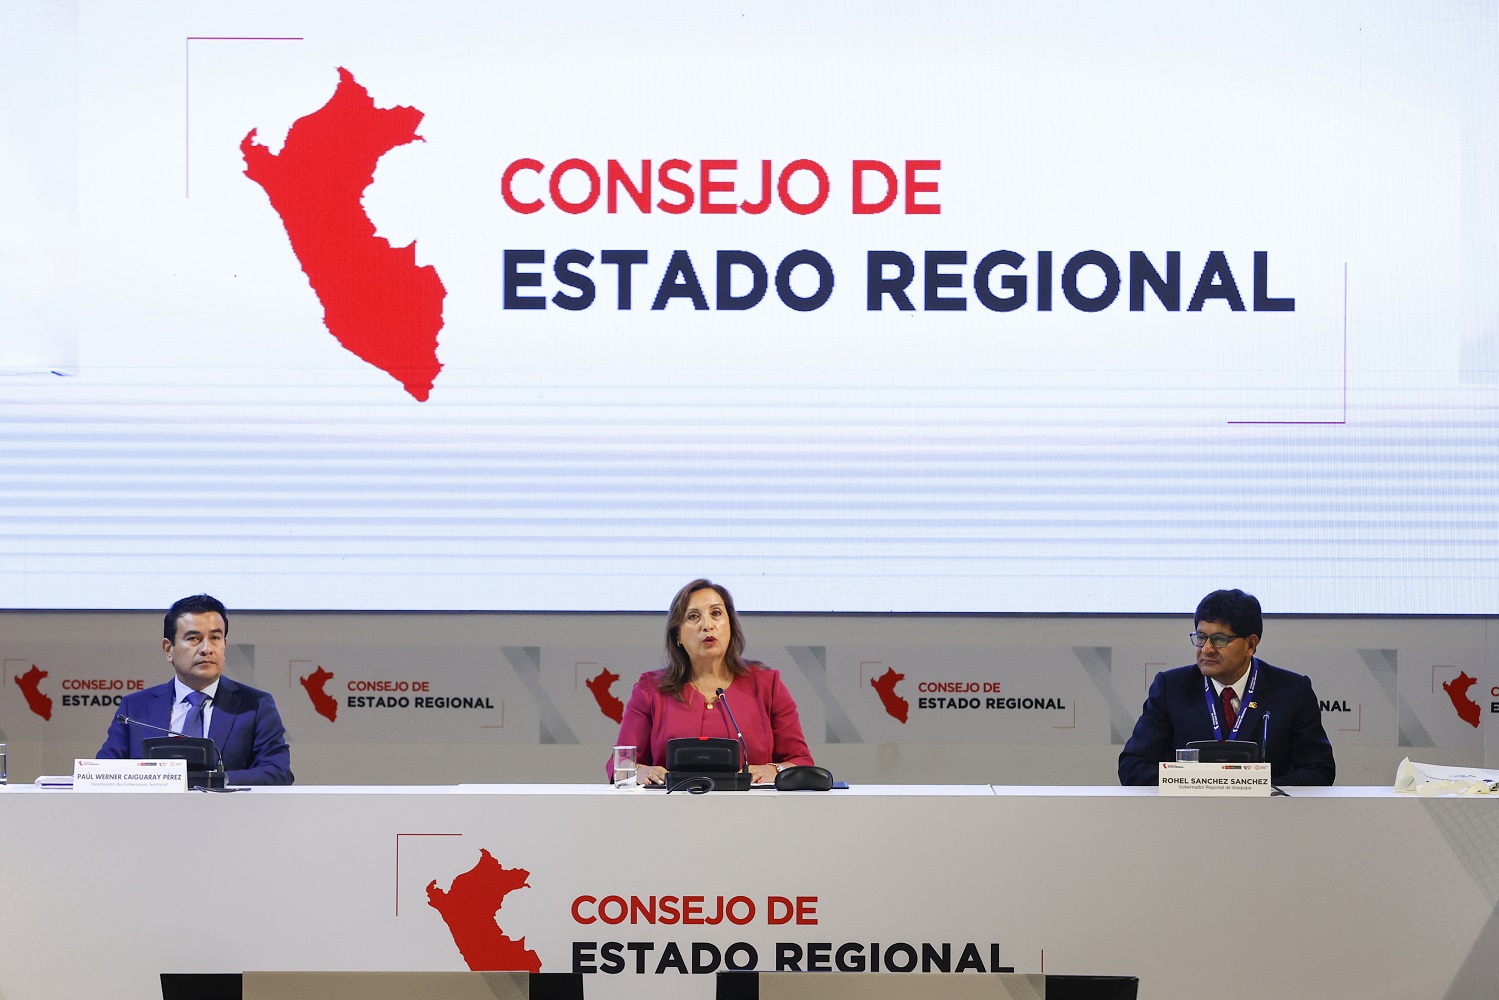 Consejo de Estado Regional, busca resolver problemas de poblaciones más vulnerables del país, indicó presidenta Dina Boluarte.